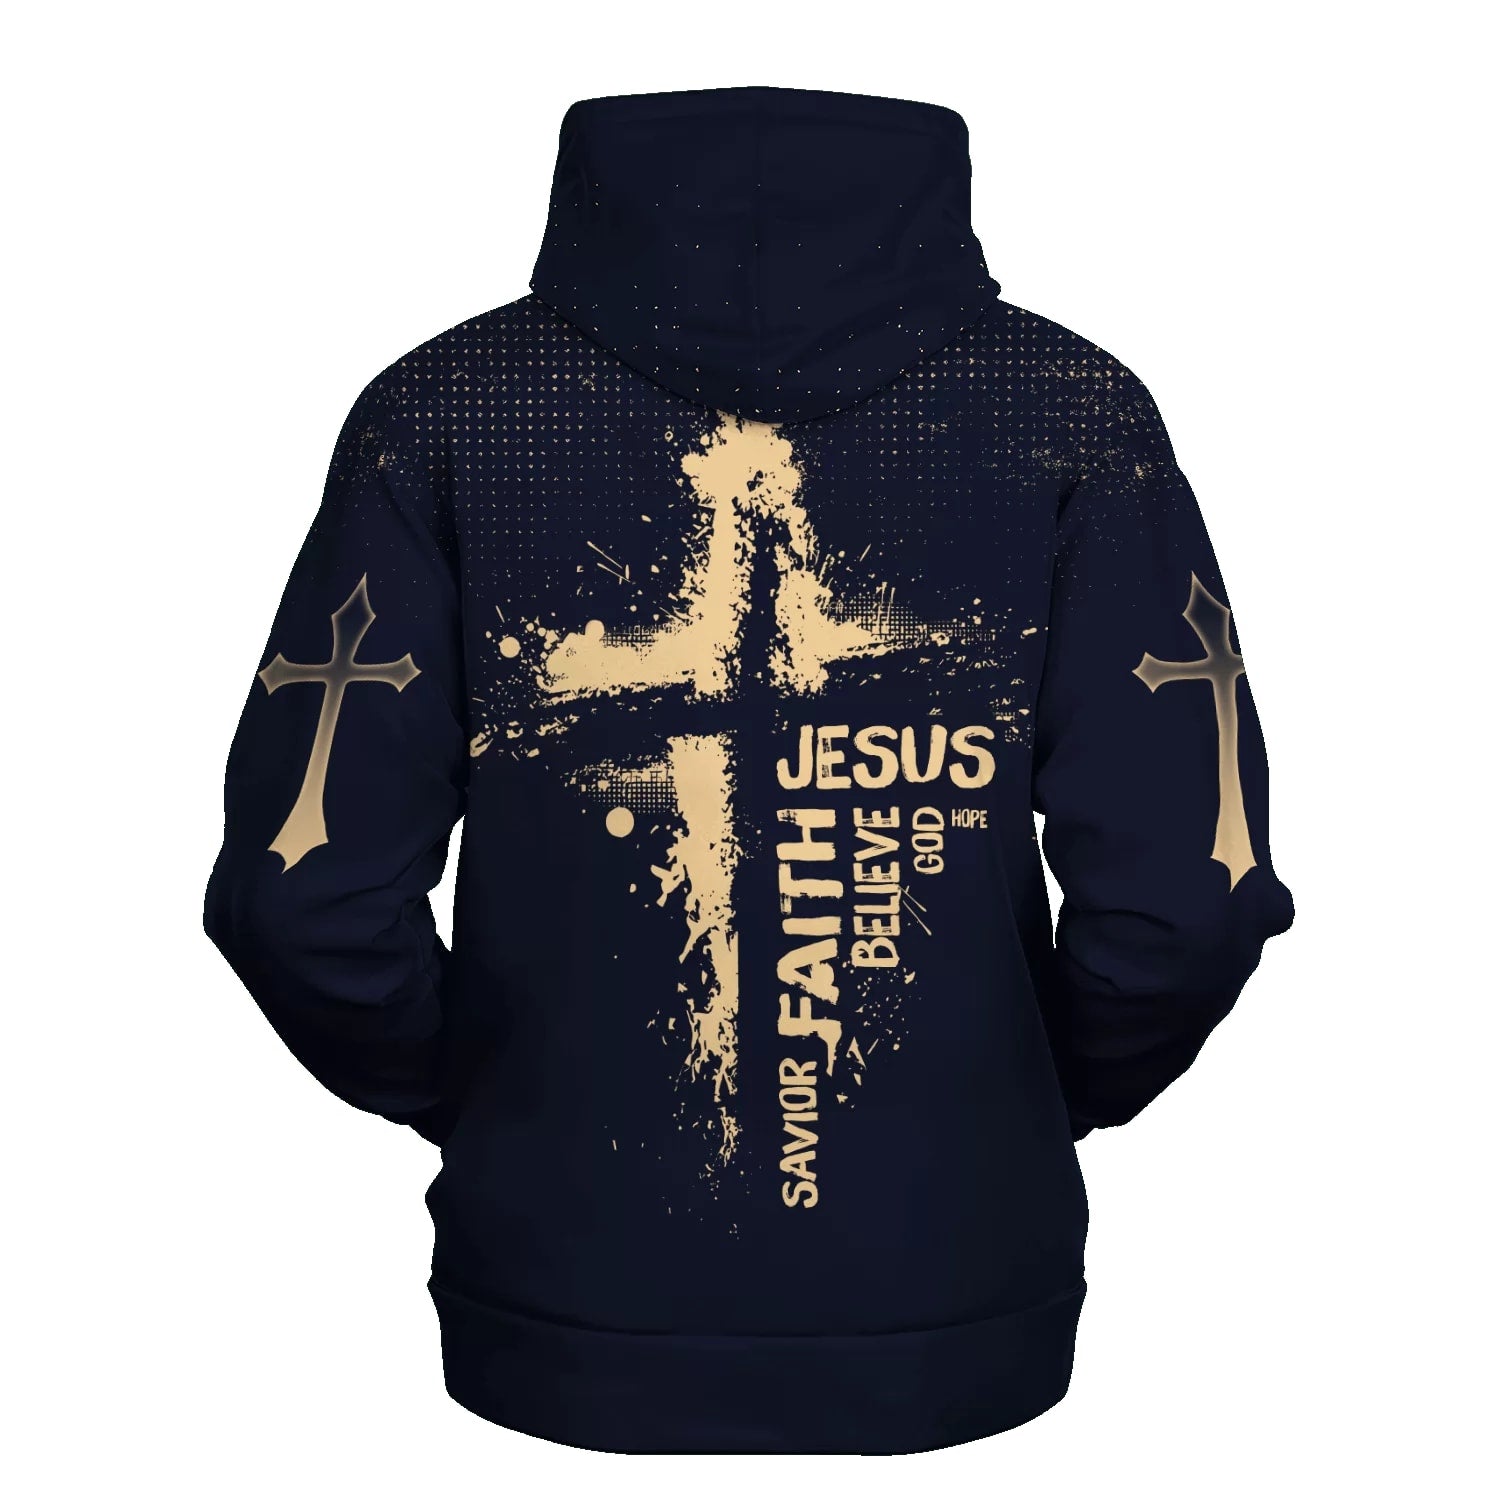 Faith in Jesus Christ Hoodies - Jesus Hoodie - Men & Women Christian Hoodie - 3D Printed Hoodie